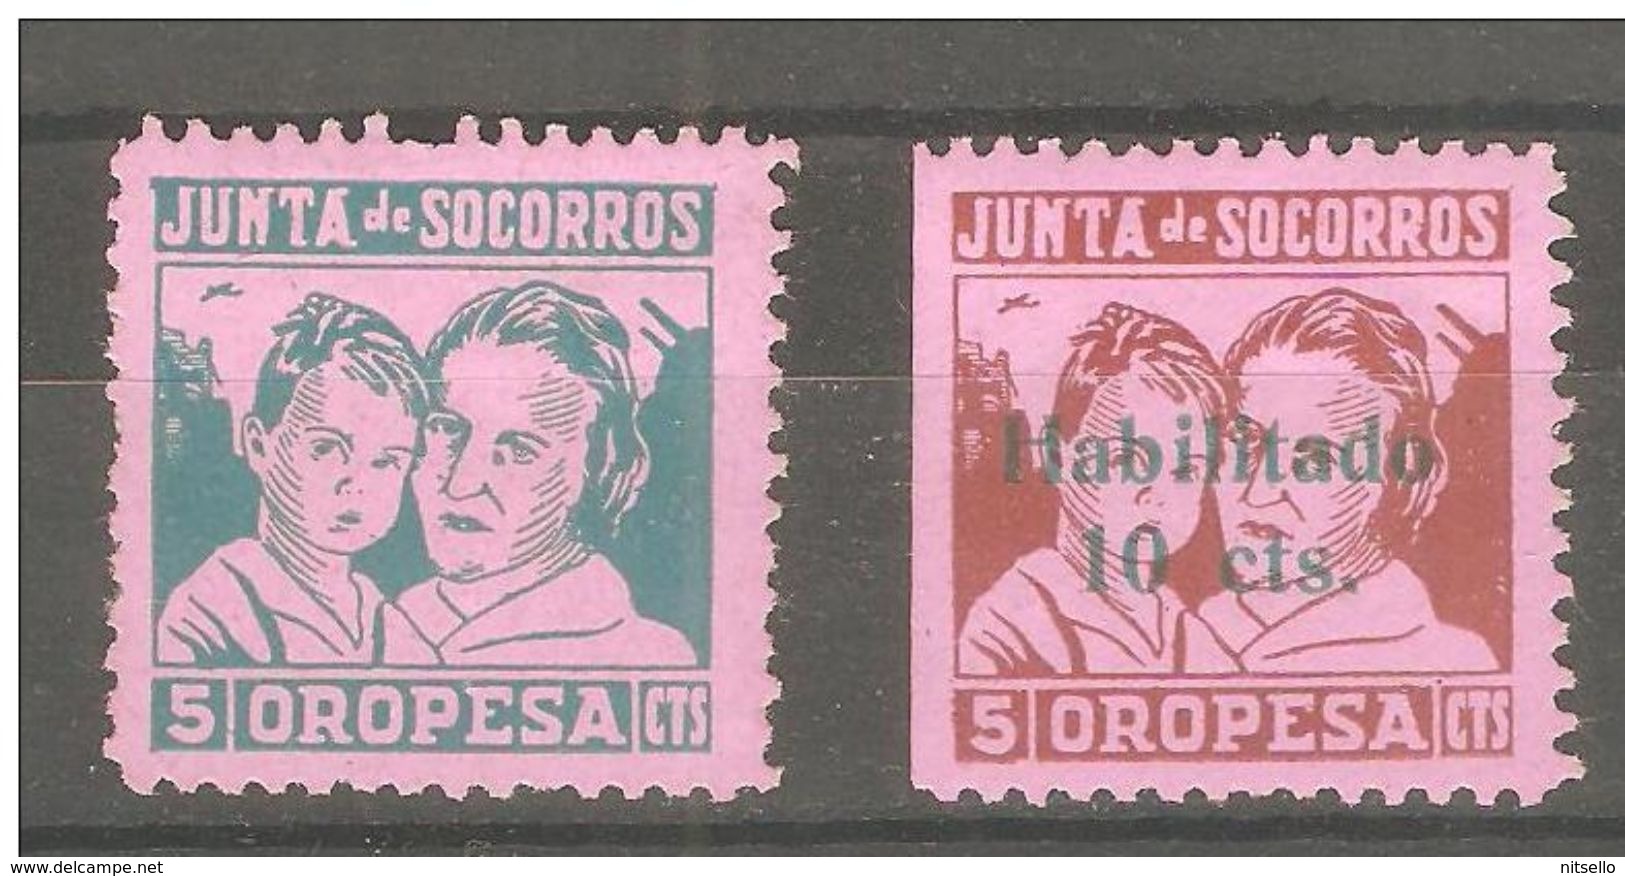 LOTE 2189  ///  (C196) ESPAÑA PATRIOTICOS   OROPESA - Spanish Civil War Labels